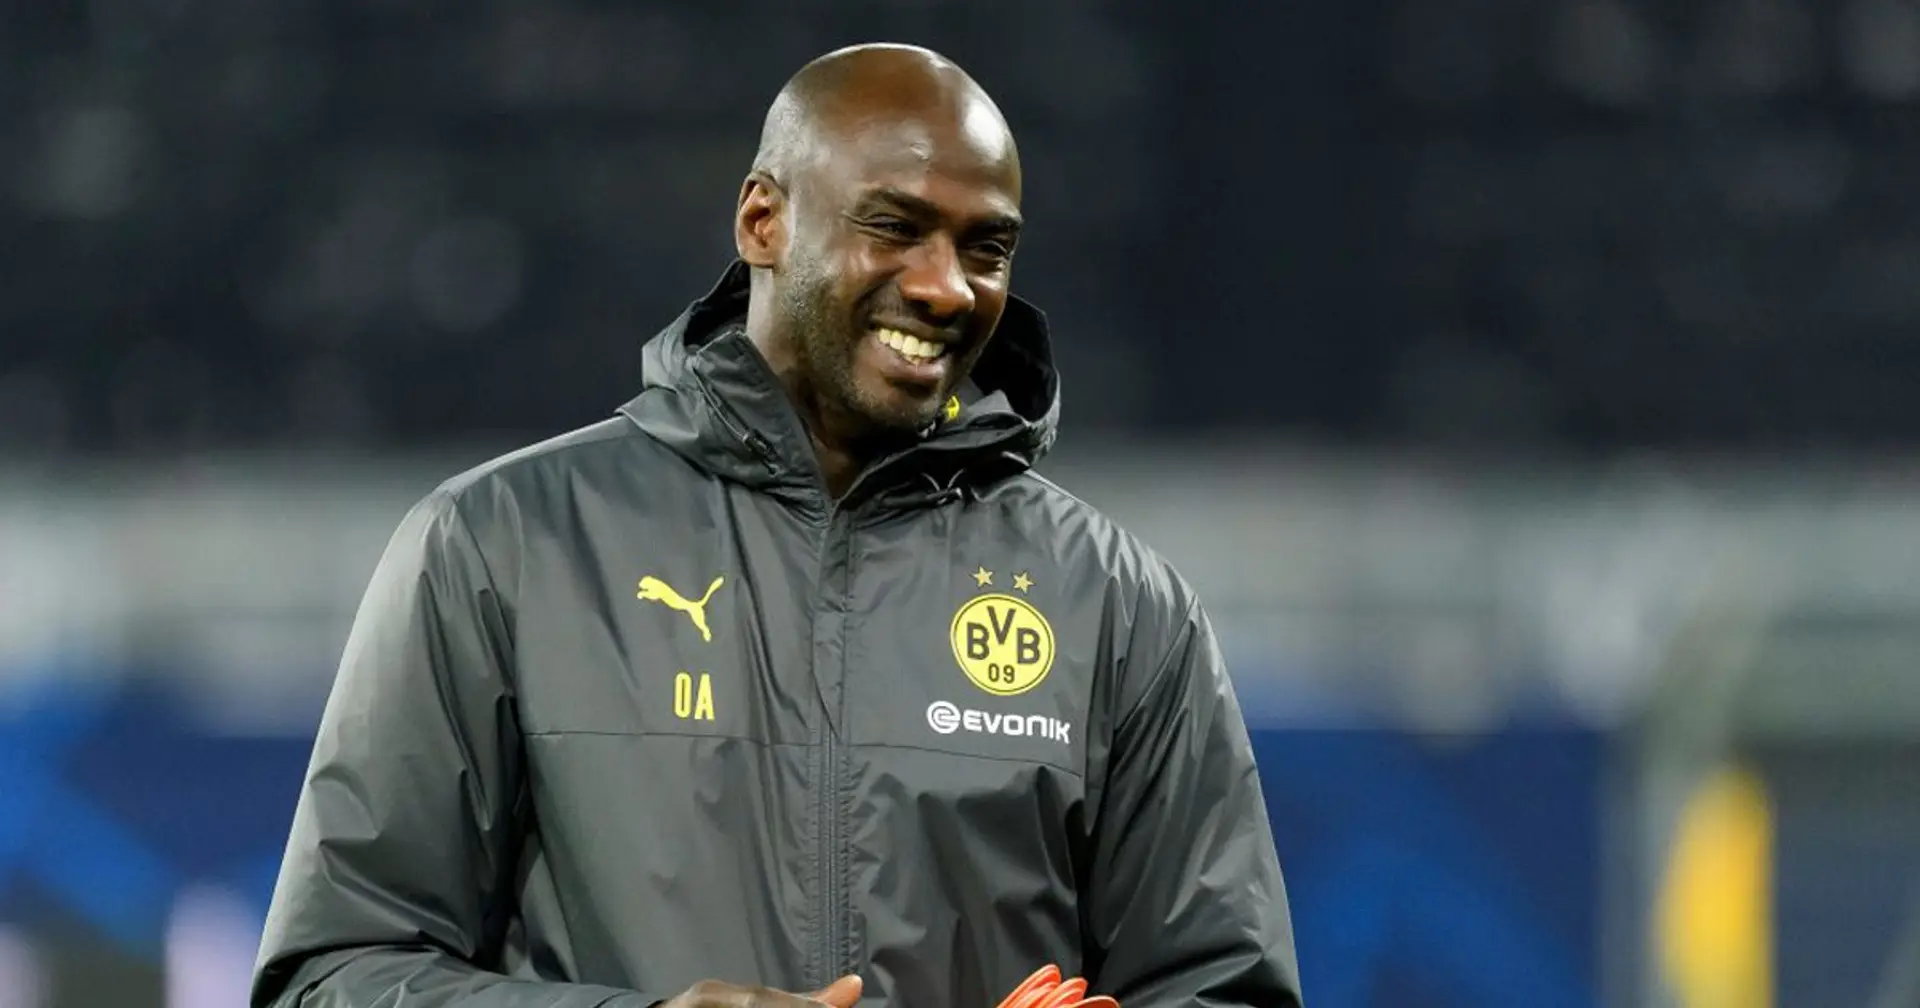 OFFIZIELL: Otto Addo verlässt Borussia Dortmund am Saisonende, um neue Aufgabe zu übernehmen